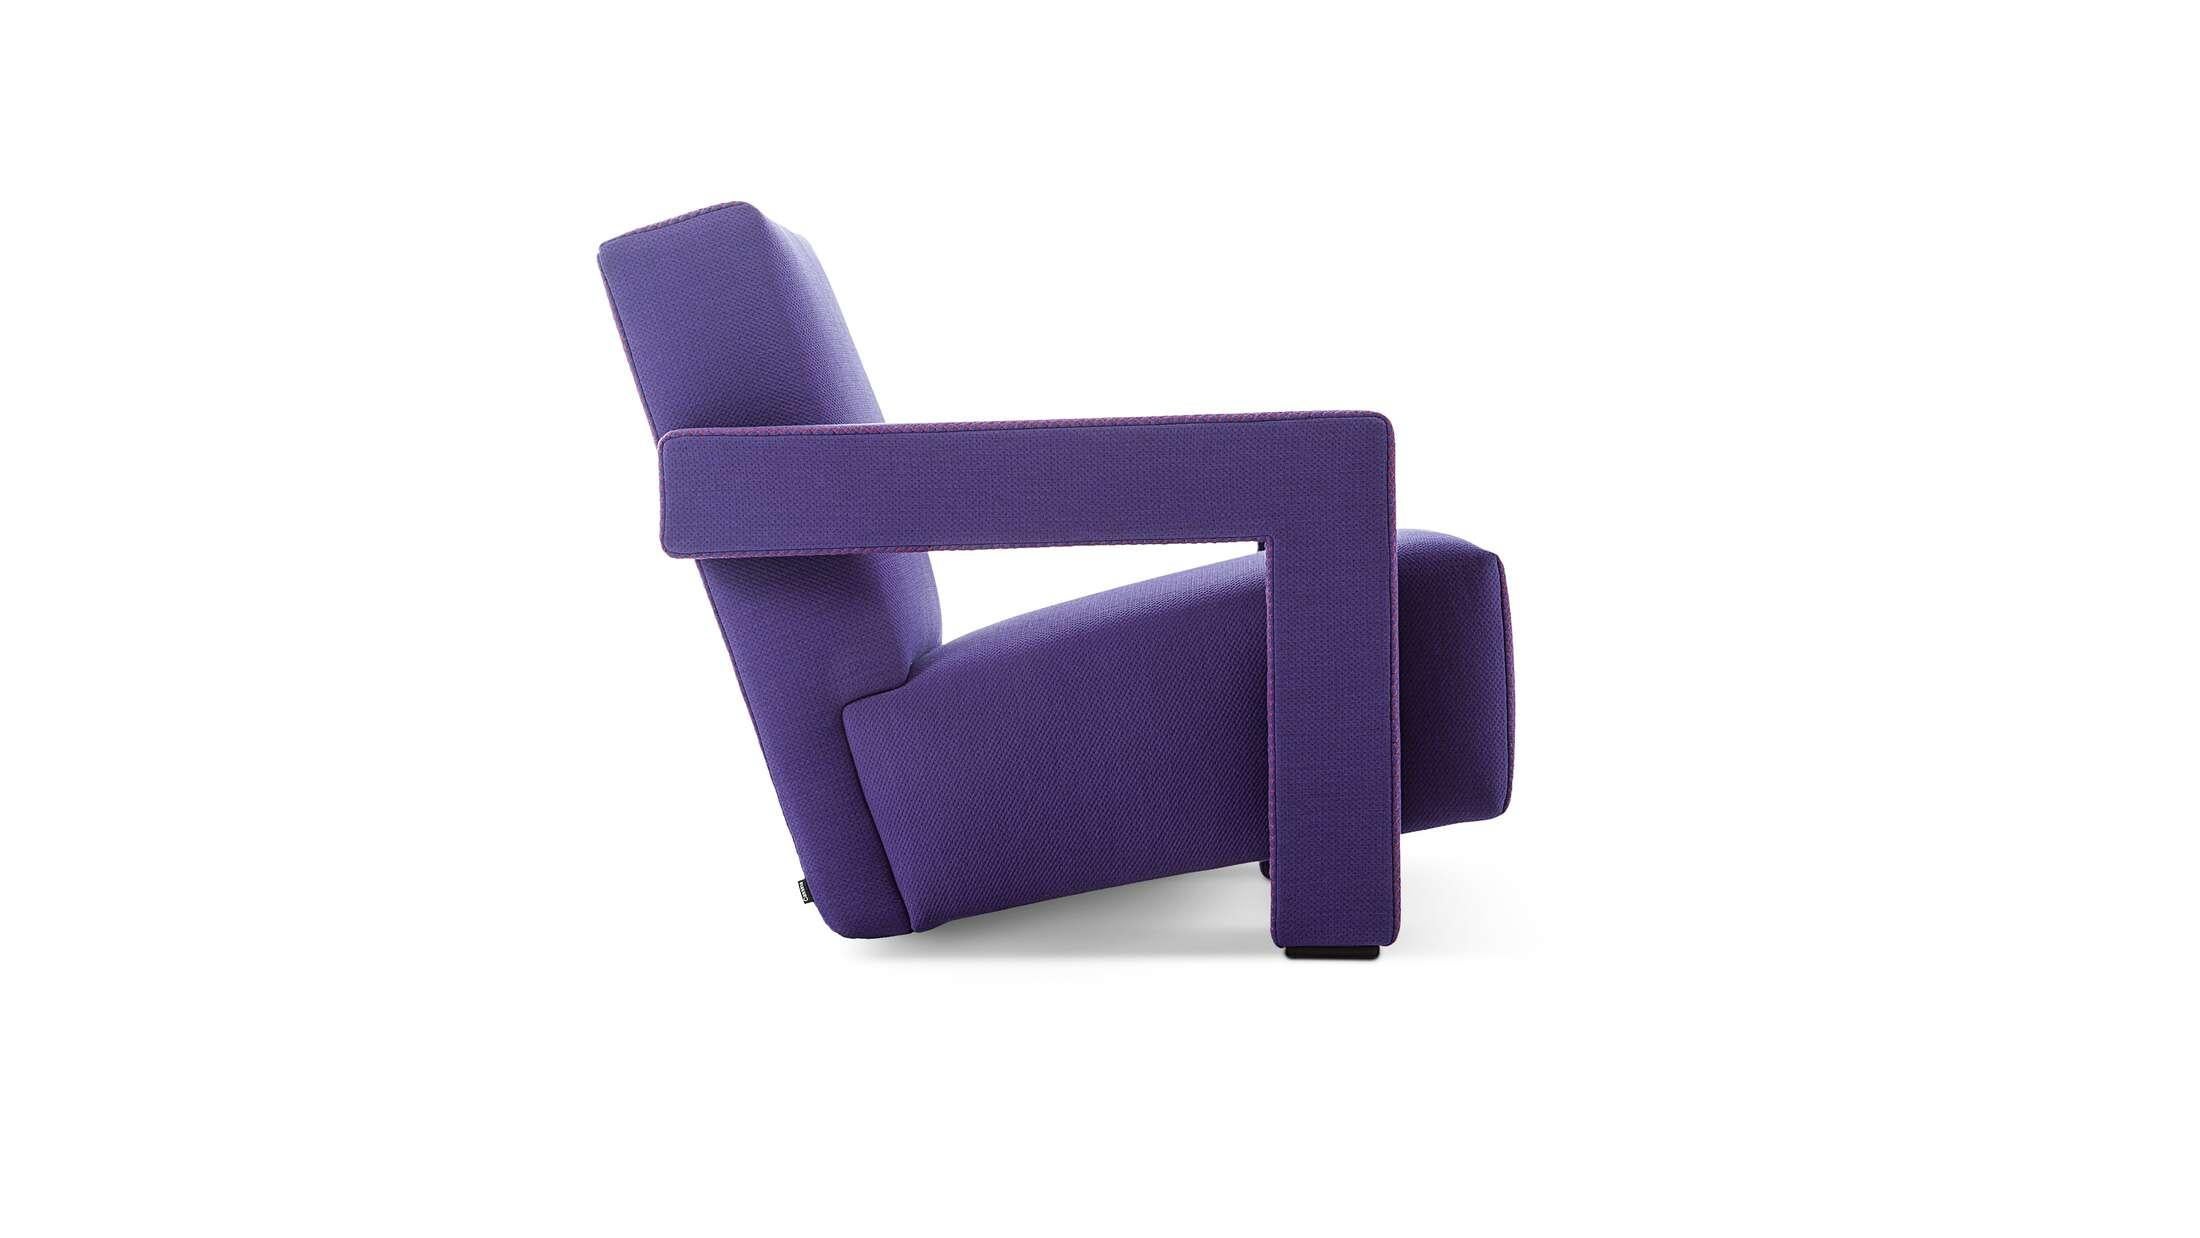 Sessel, entworfen von Gerrit Thomas Rietveld im Jahr 1935. Neu aufgelegt im Jahr 2015. Hergestellt von Cassina in Italien. Erhältlich in vielen verschiedenen Farben. 